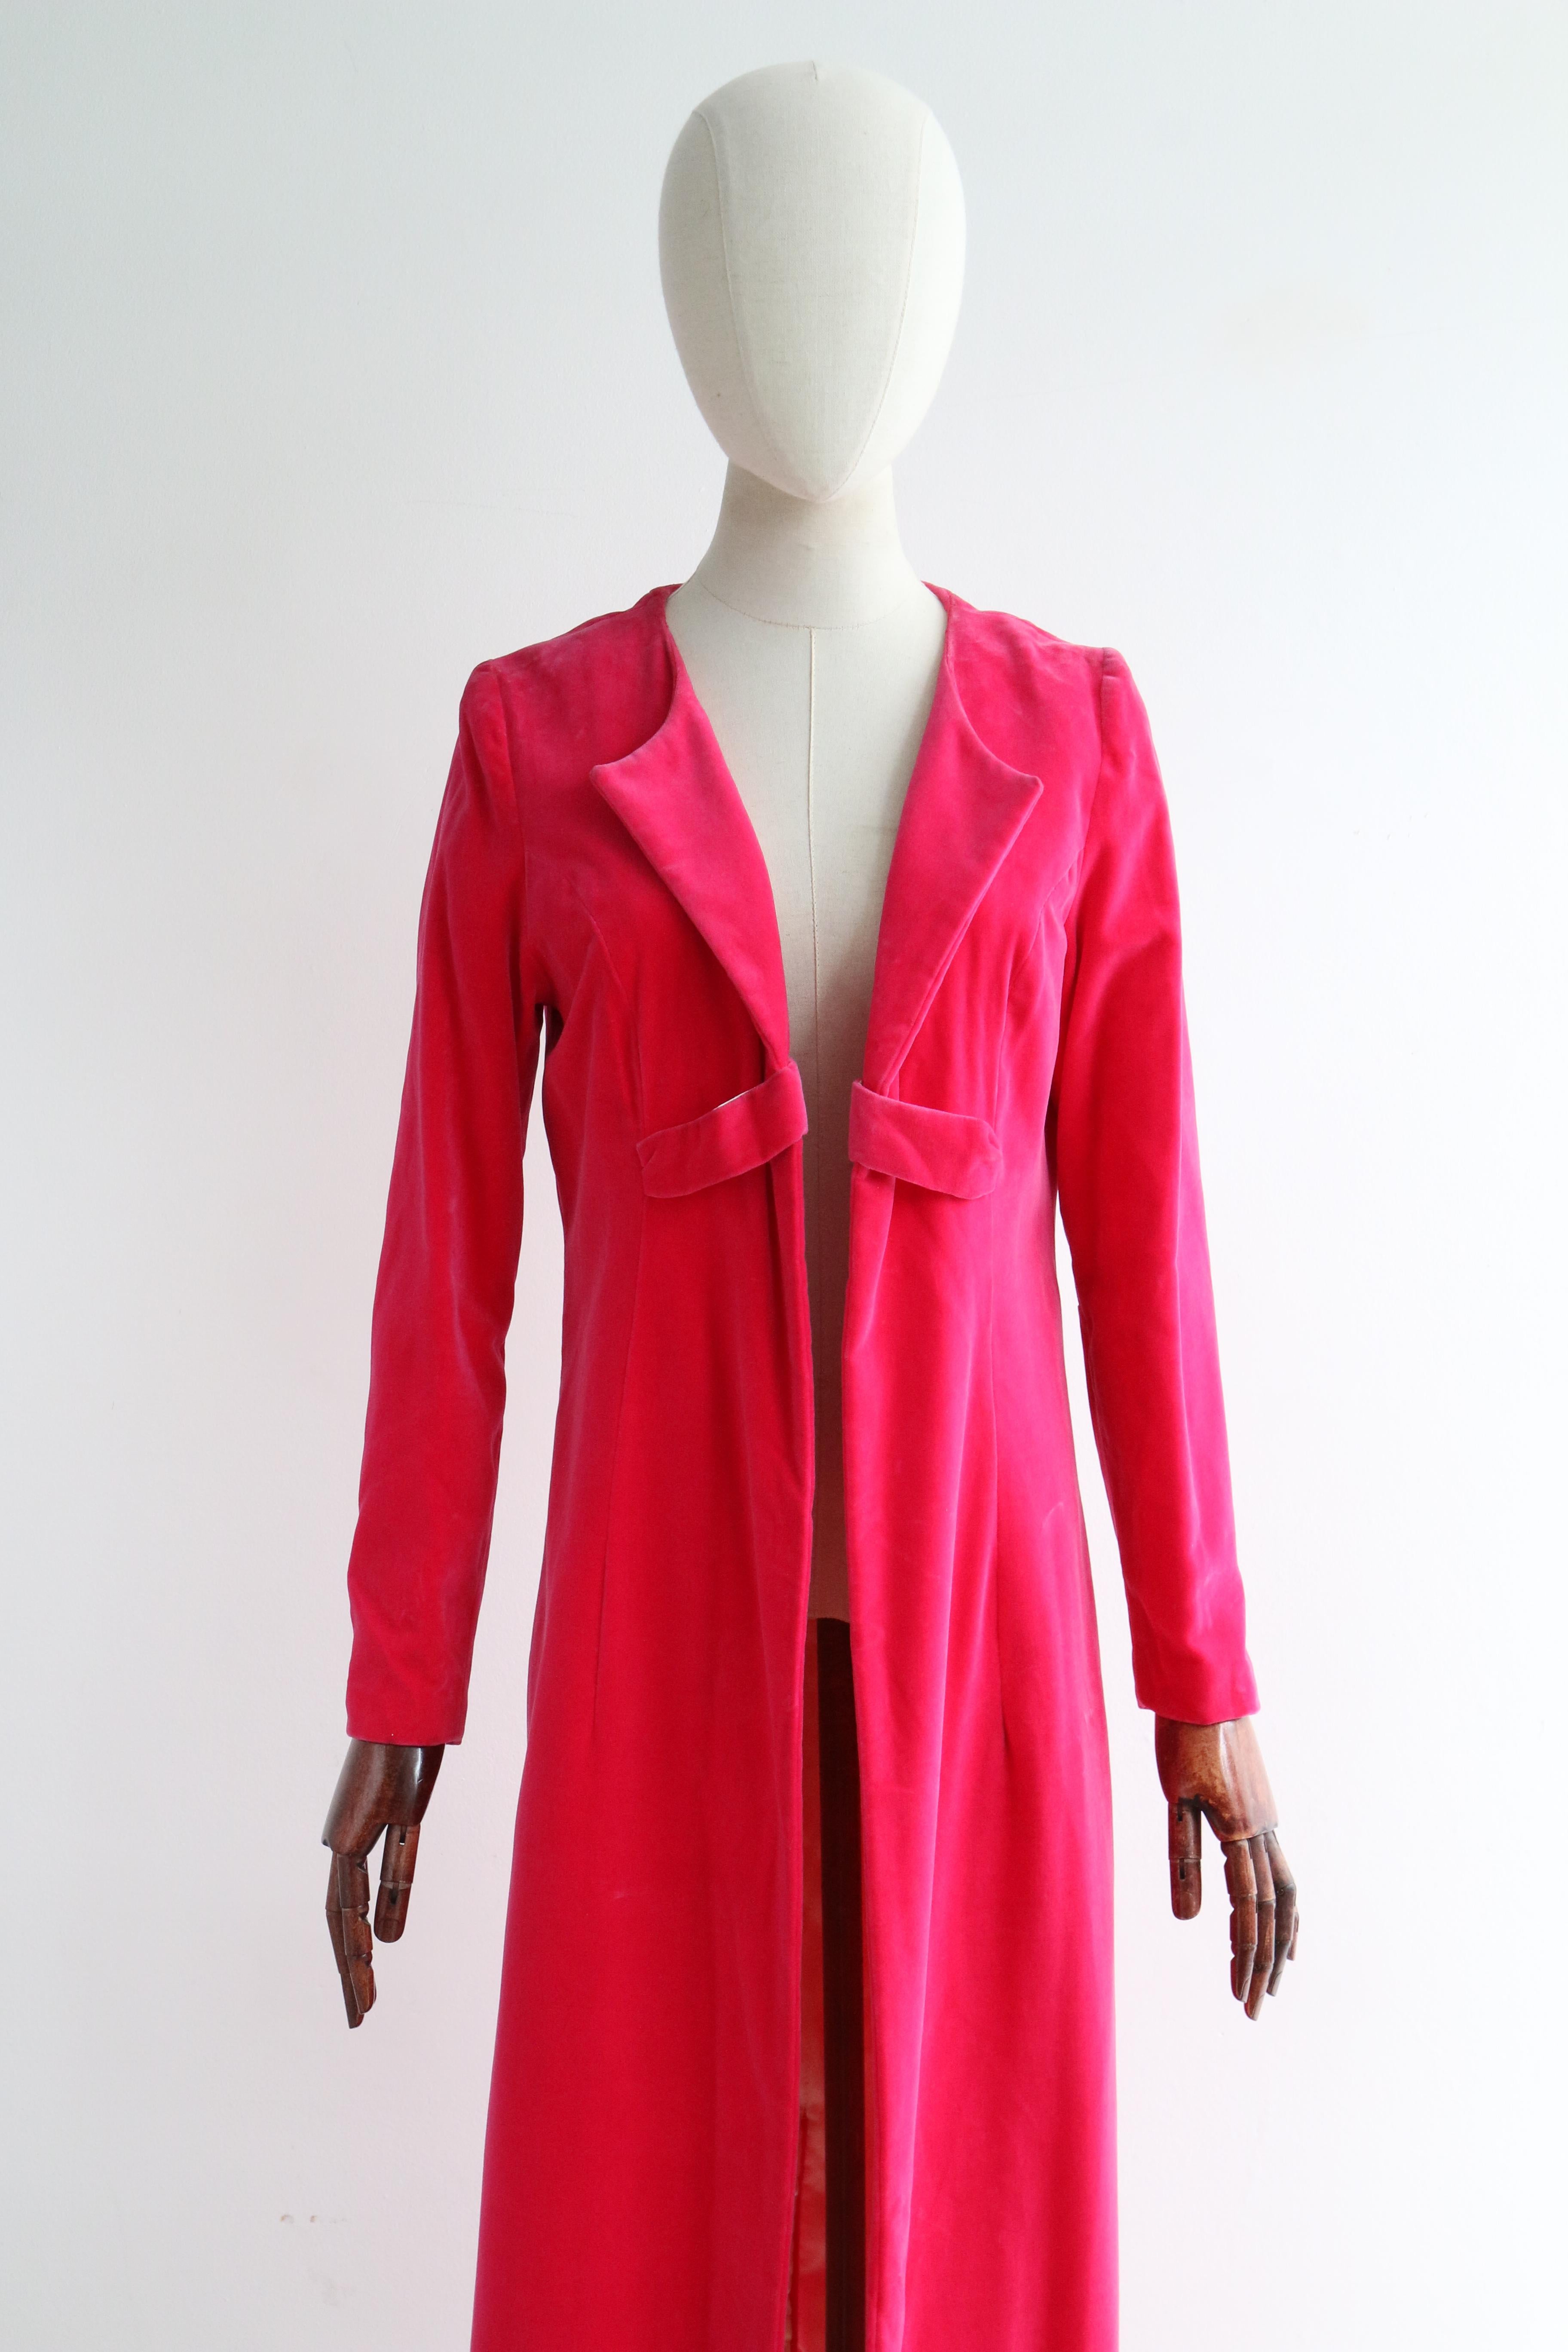 Ce manteau du soir en velours rose de Schiaparelli des années 1960, doublé de satin de rayonne crème, est la pièce maîtresse de votre garde-robe.  

L'encolure ouverte du manteau est encadrée par des revers pointus incurvés qui rejoignent le devant